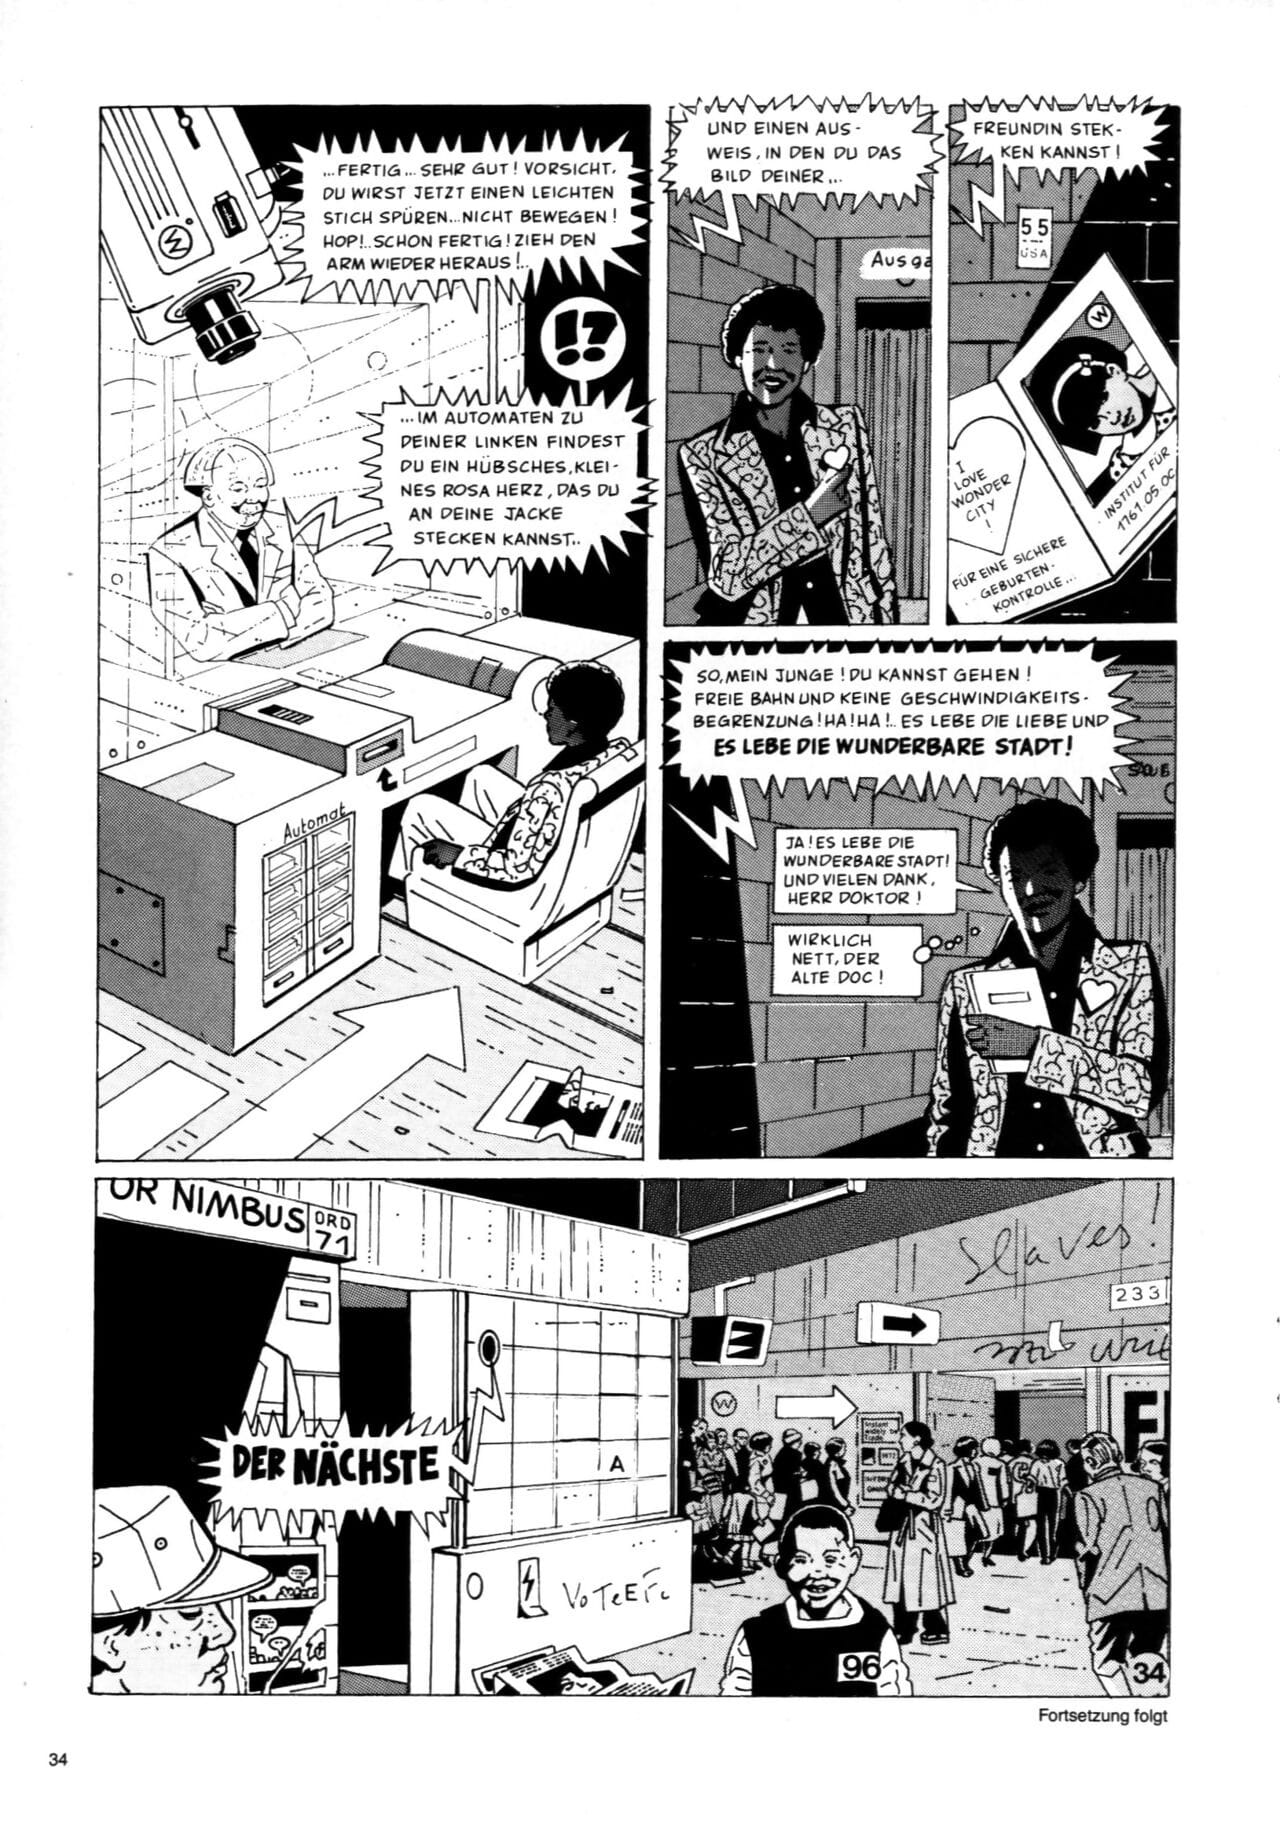 schwermetall #080 PARTIE 2 page 1